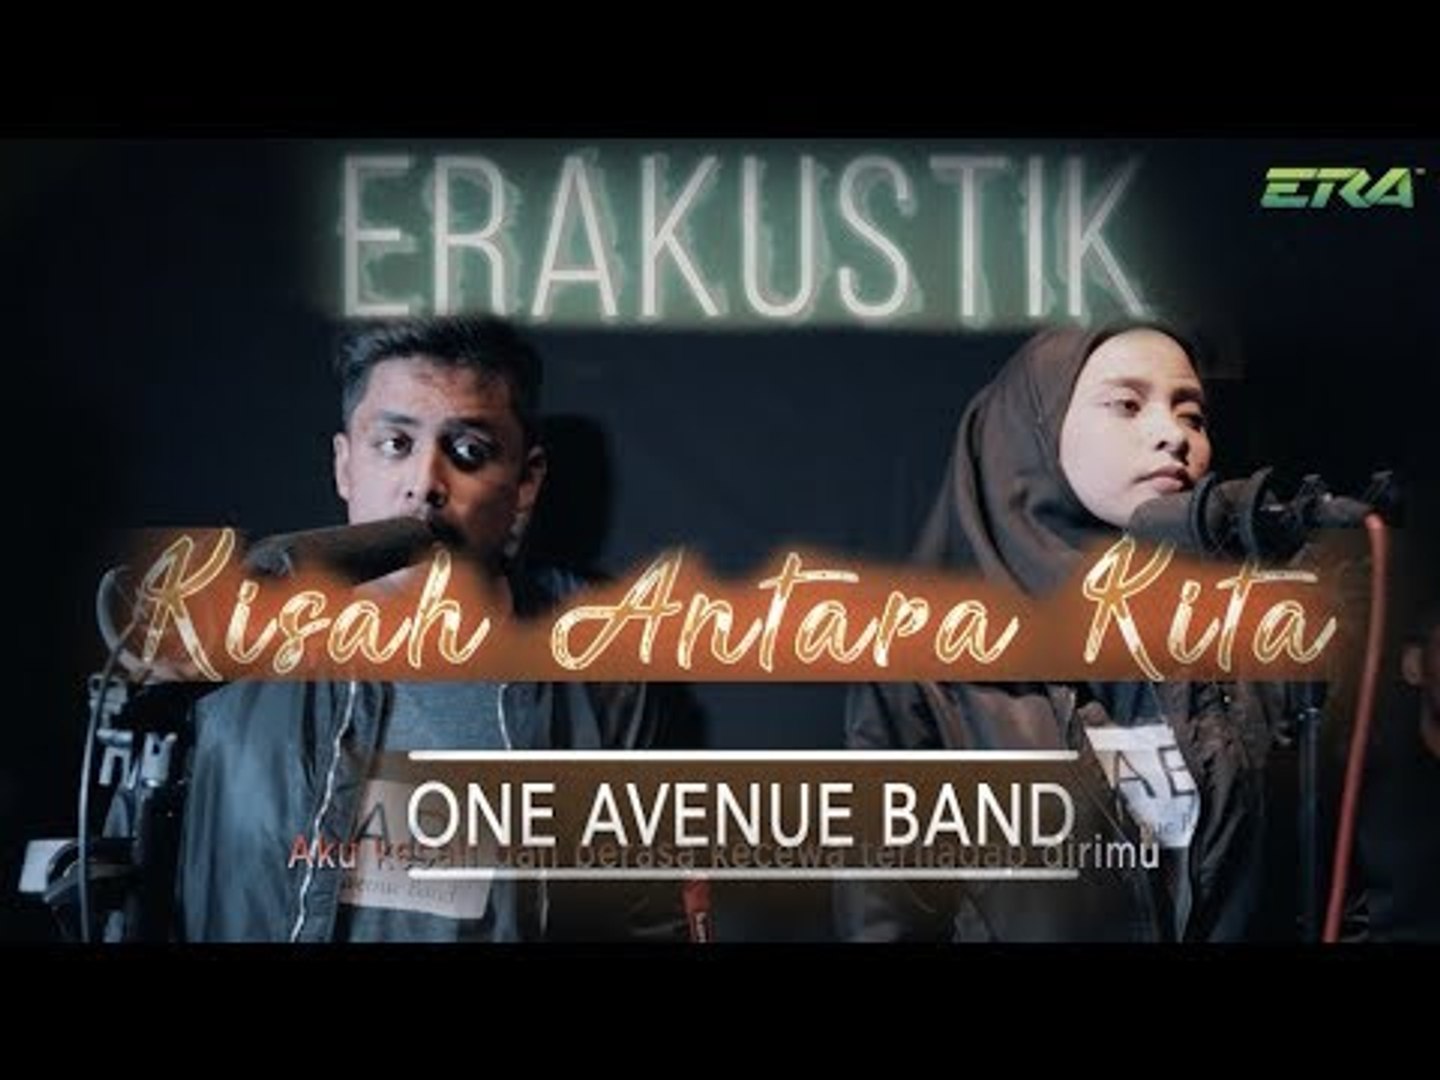 Erakustik One Avenue Band Kisah Antara Kita Video Dailymotion